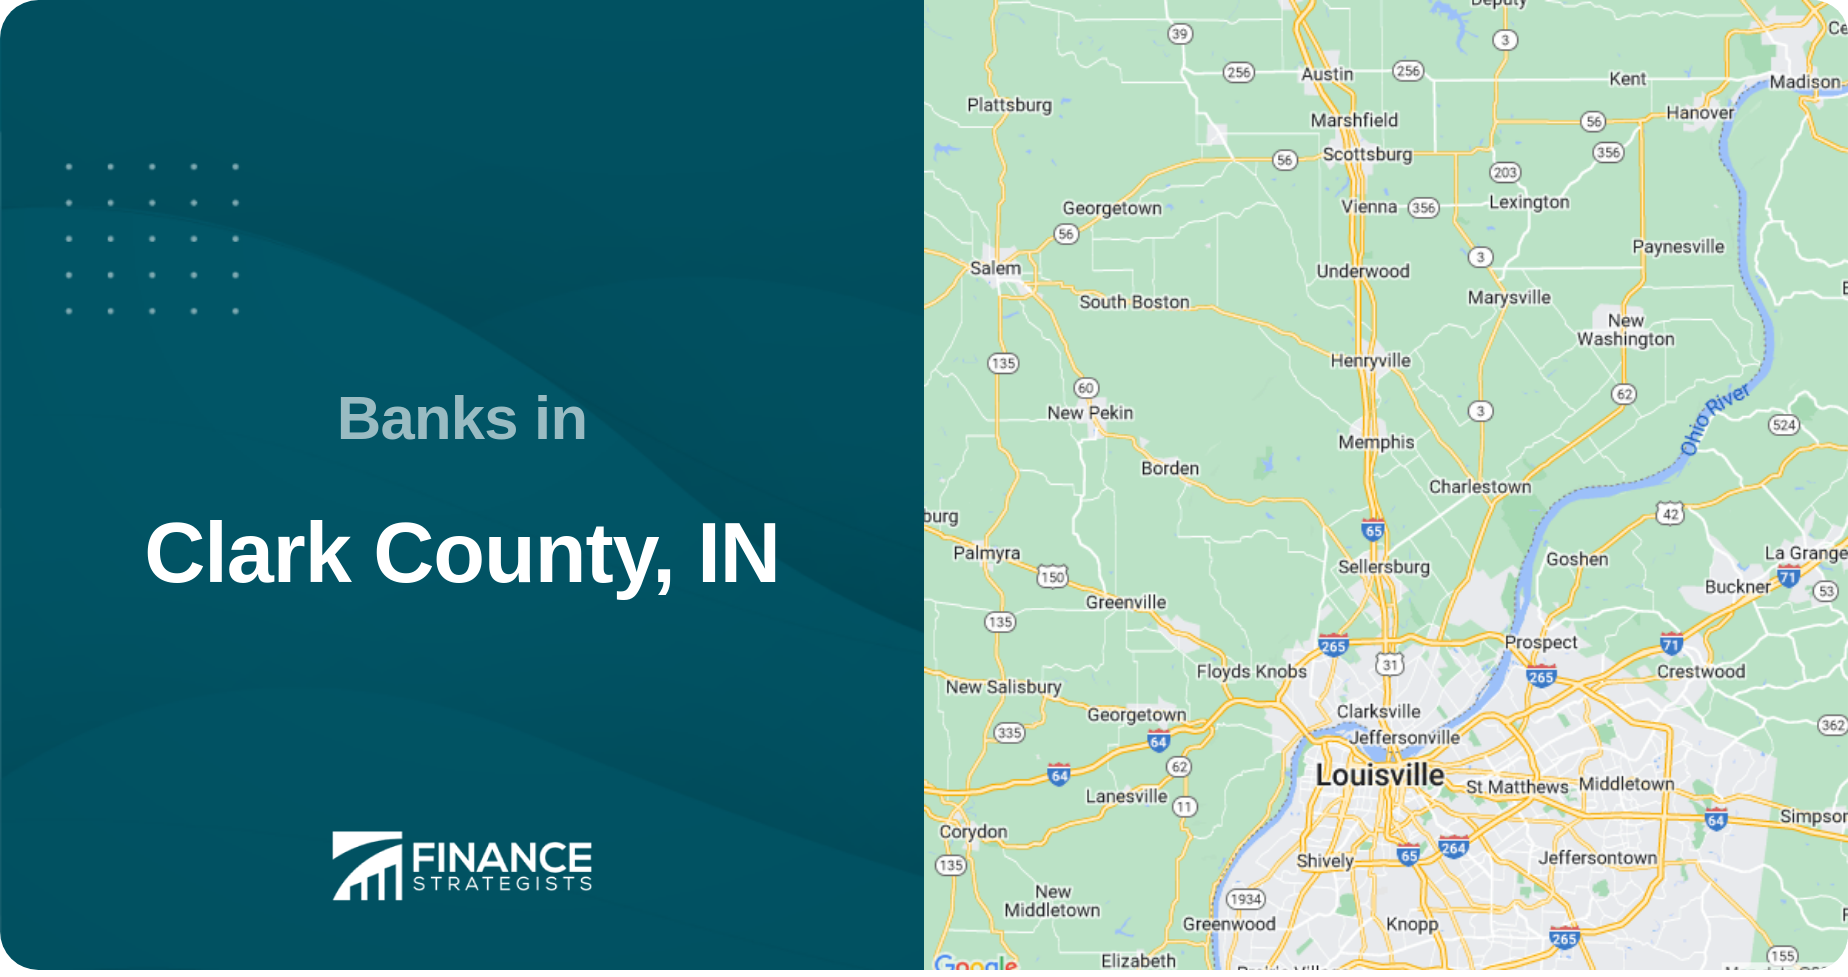 Banks in Clark County, IN